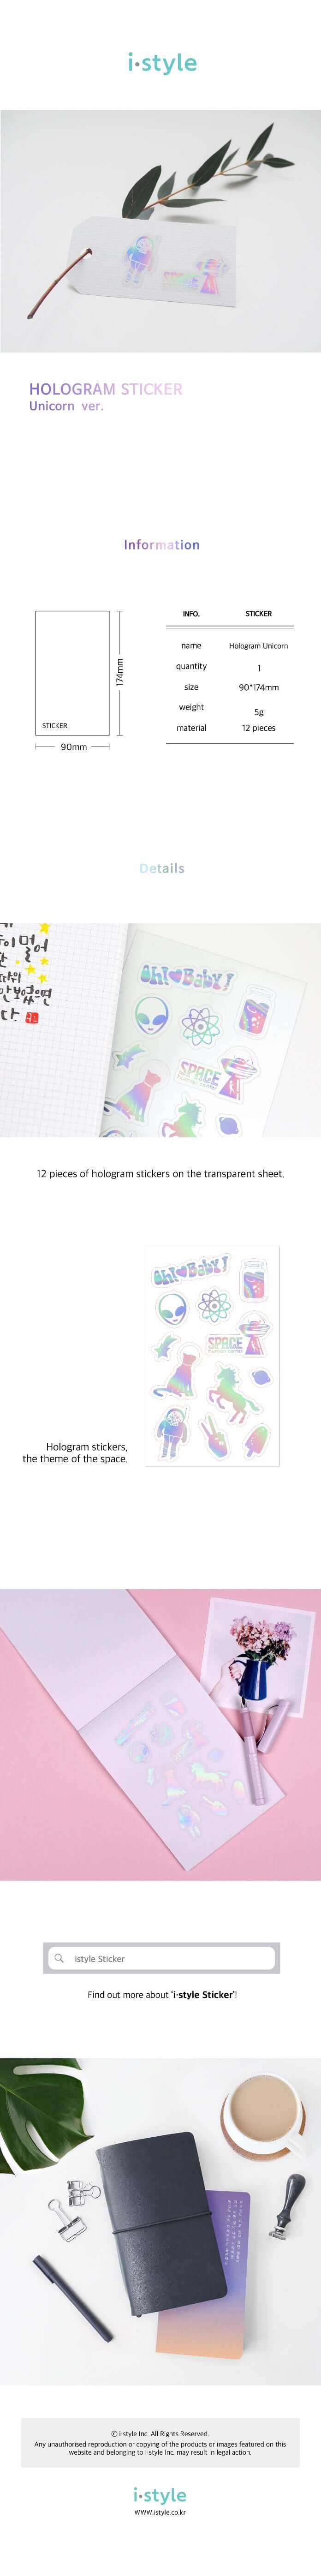 Shil Note Hologram Sticker (Unicornio)